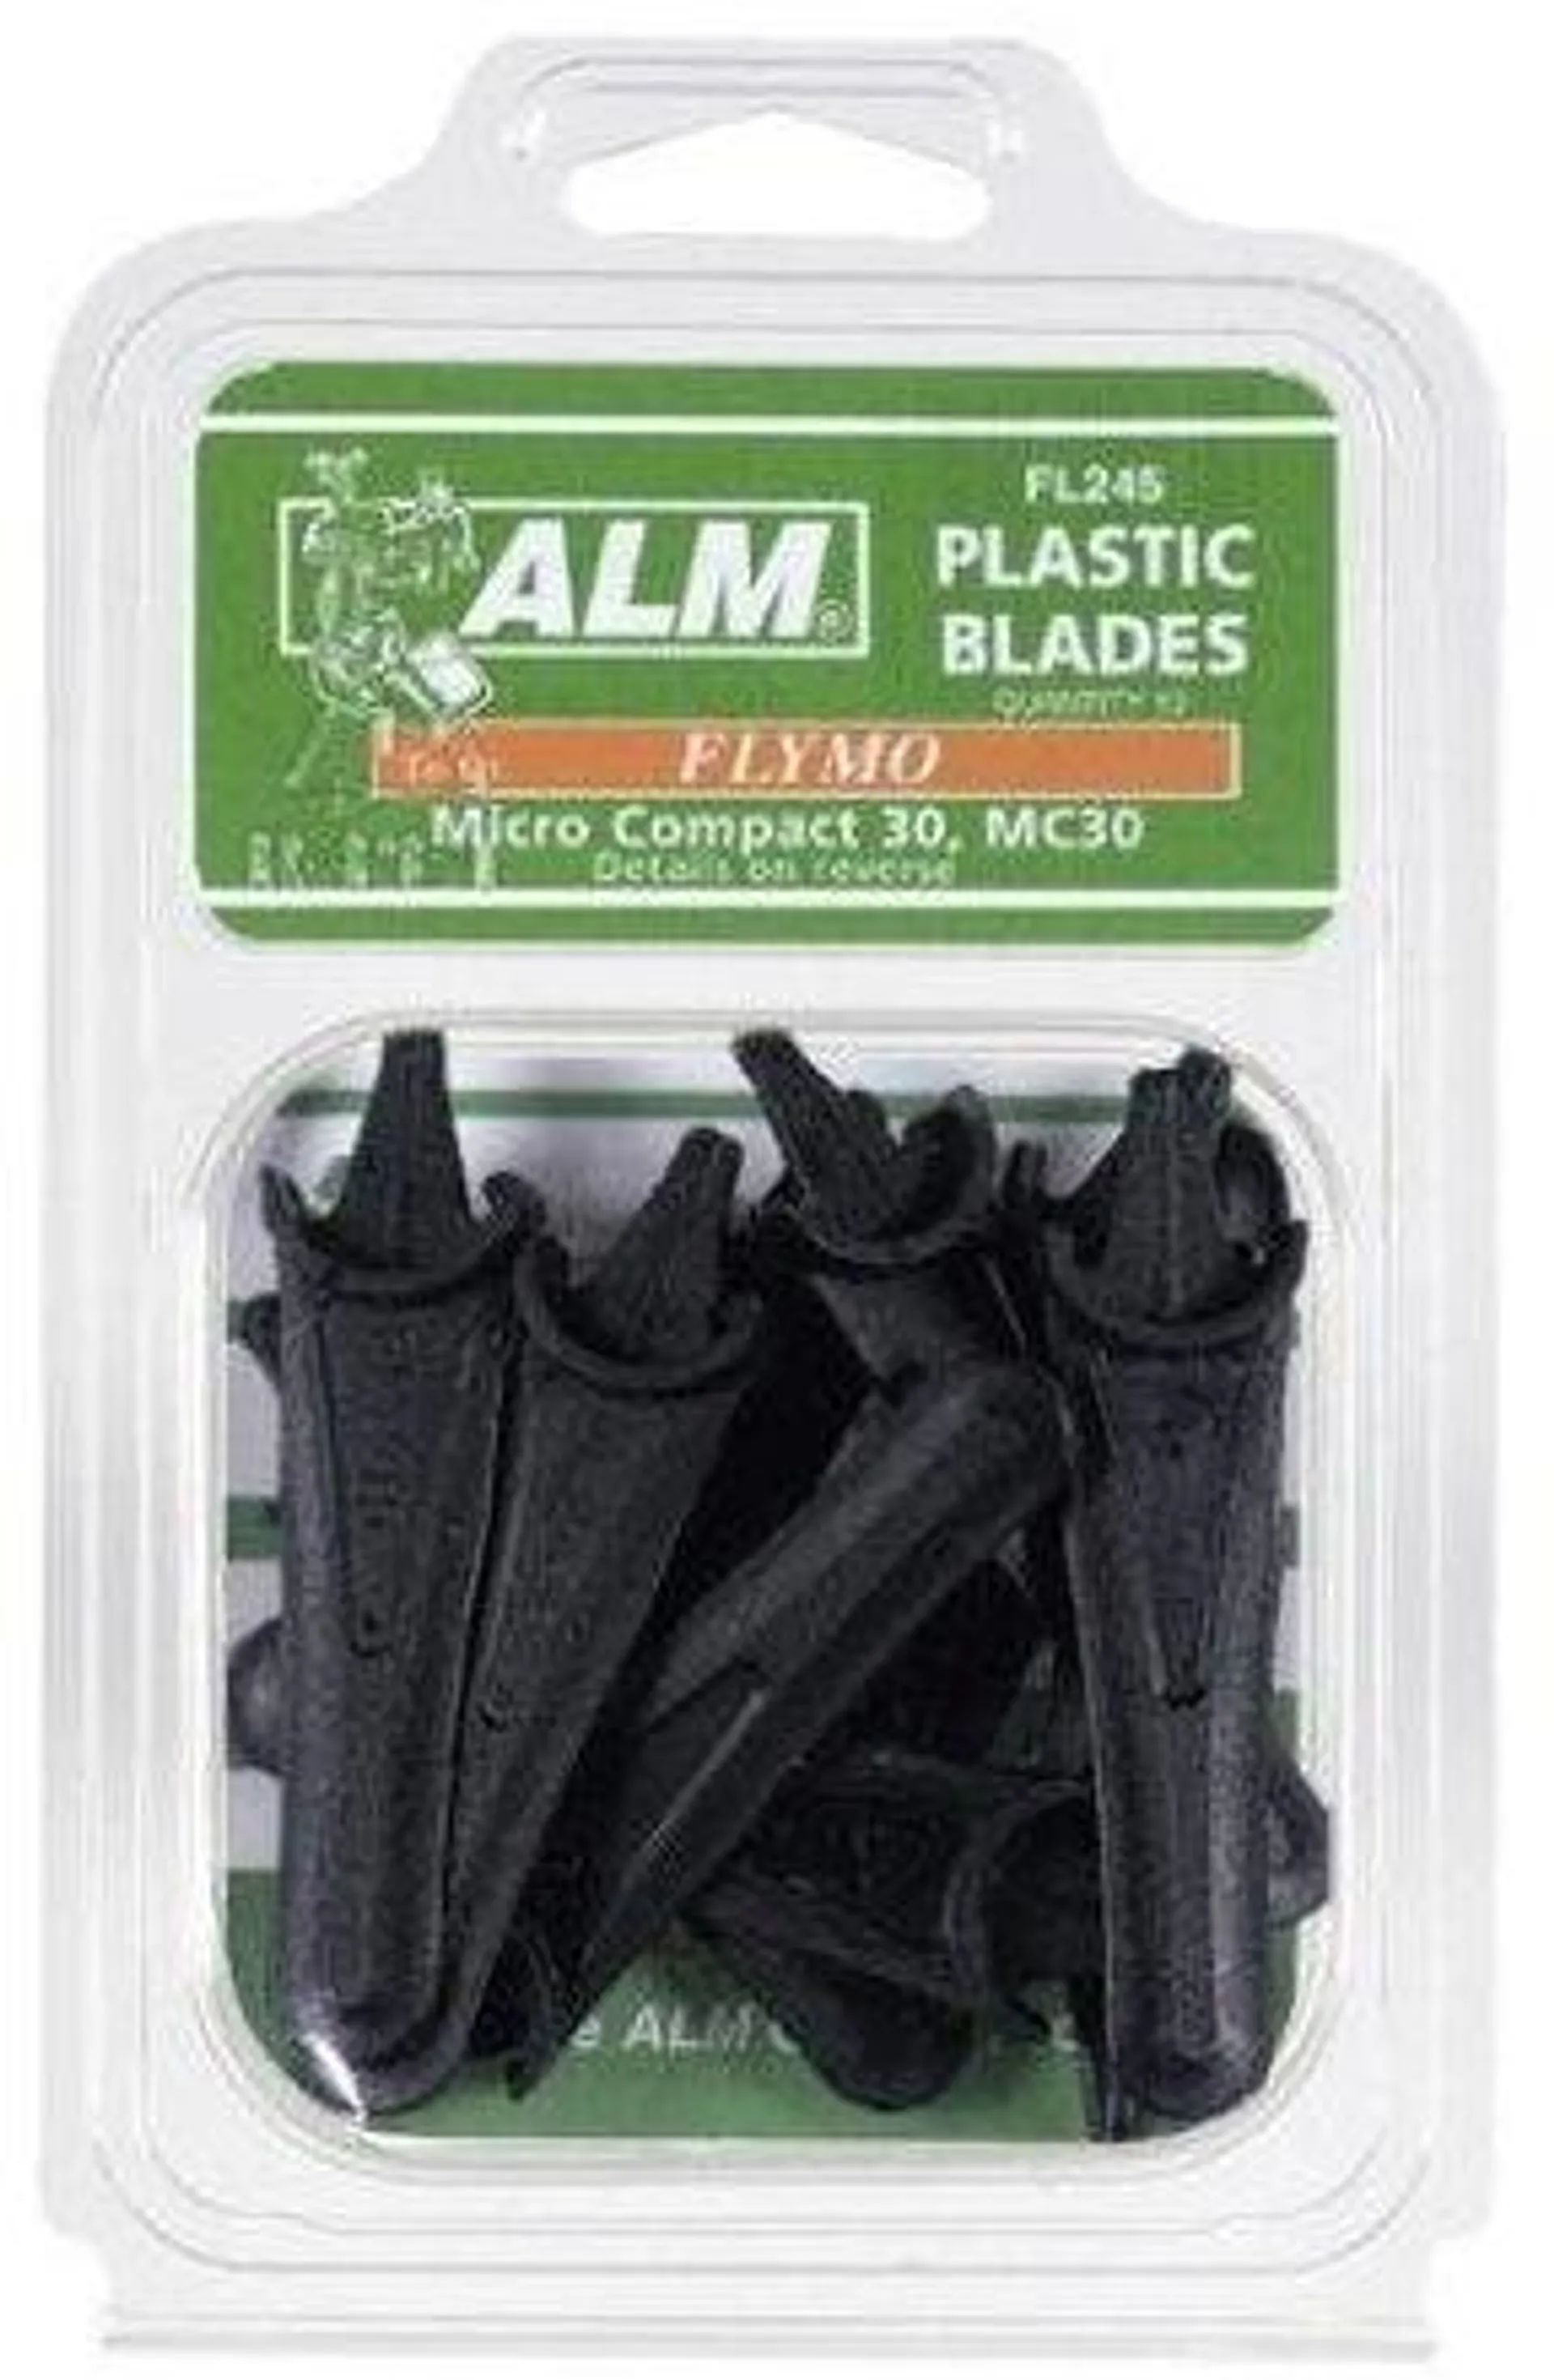 ALM FL245 10 X Plastic blades for Flymo